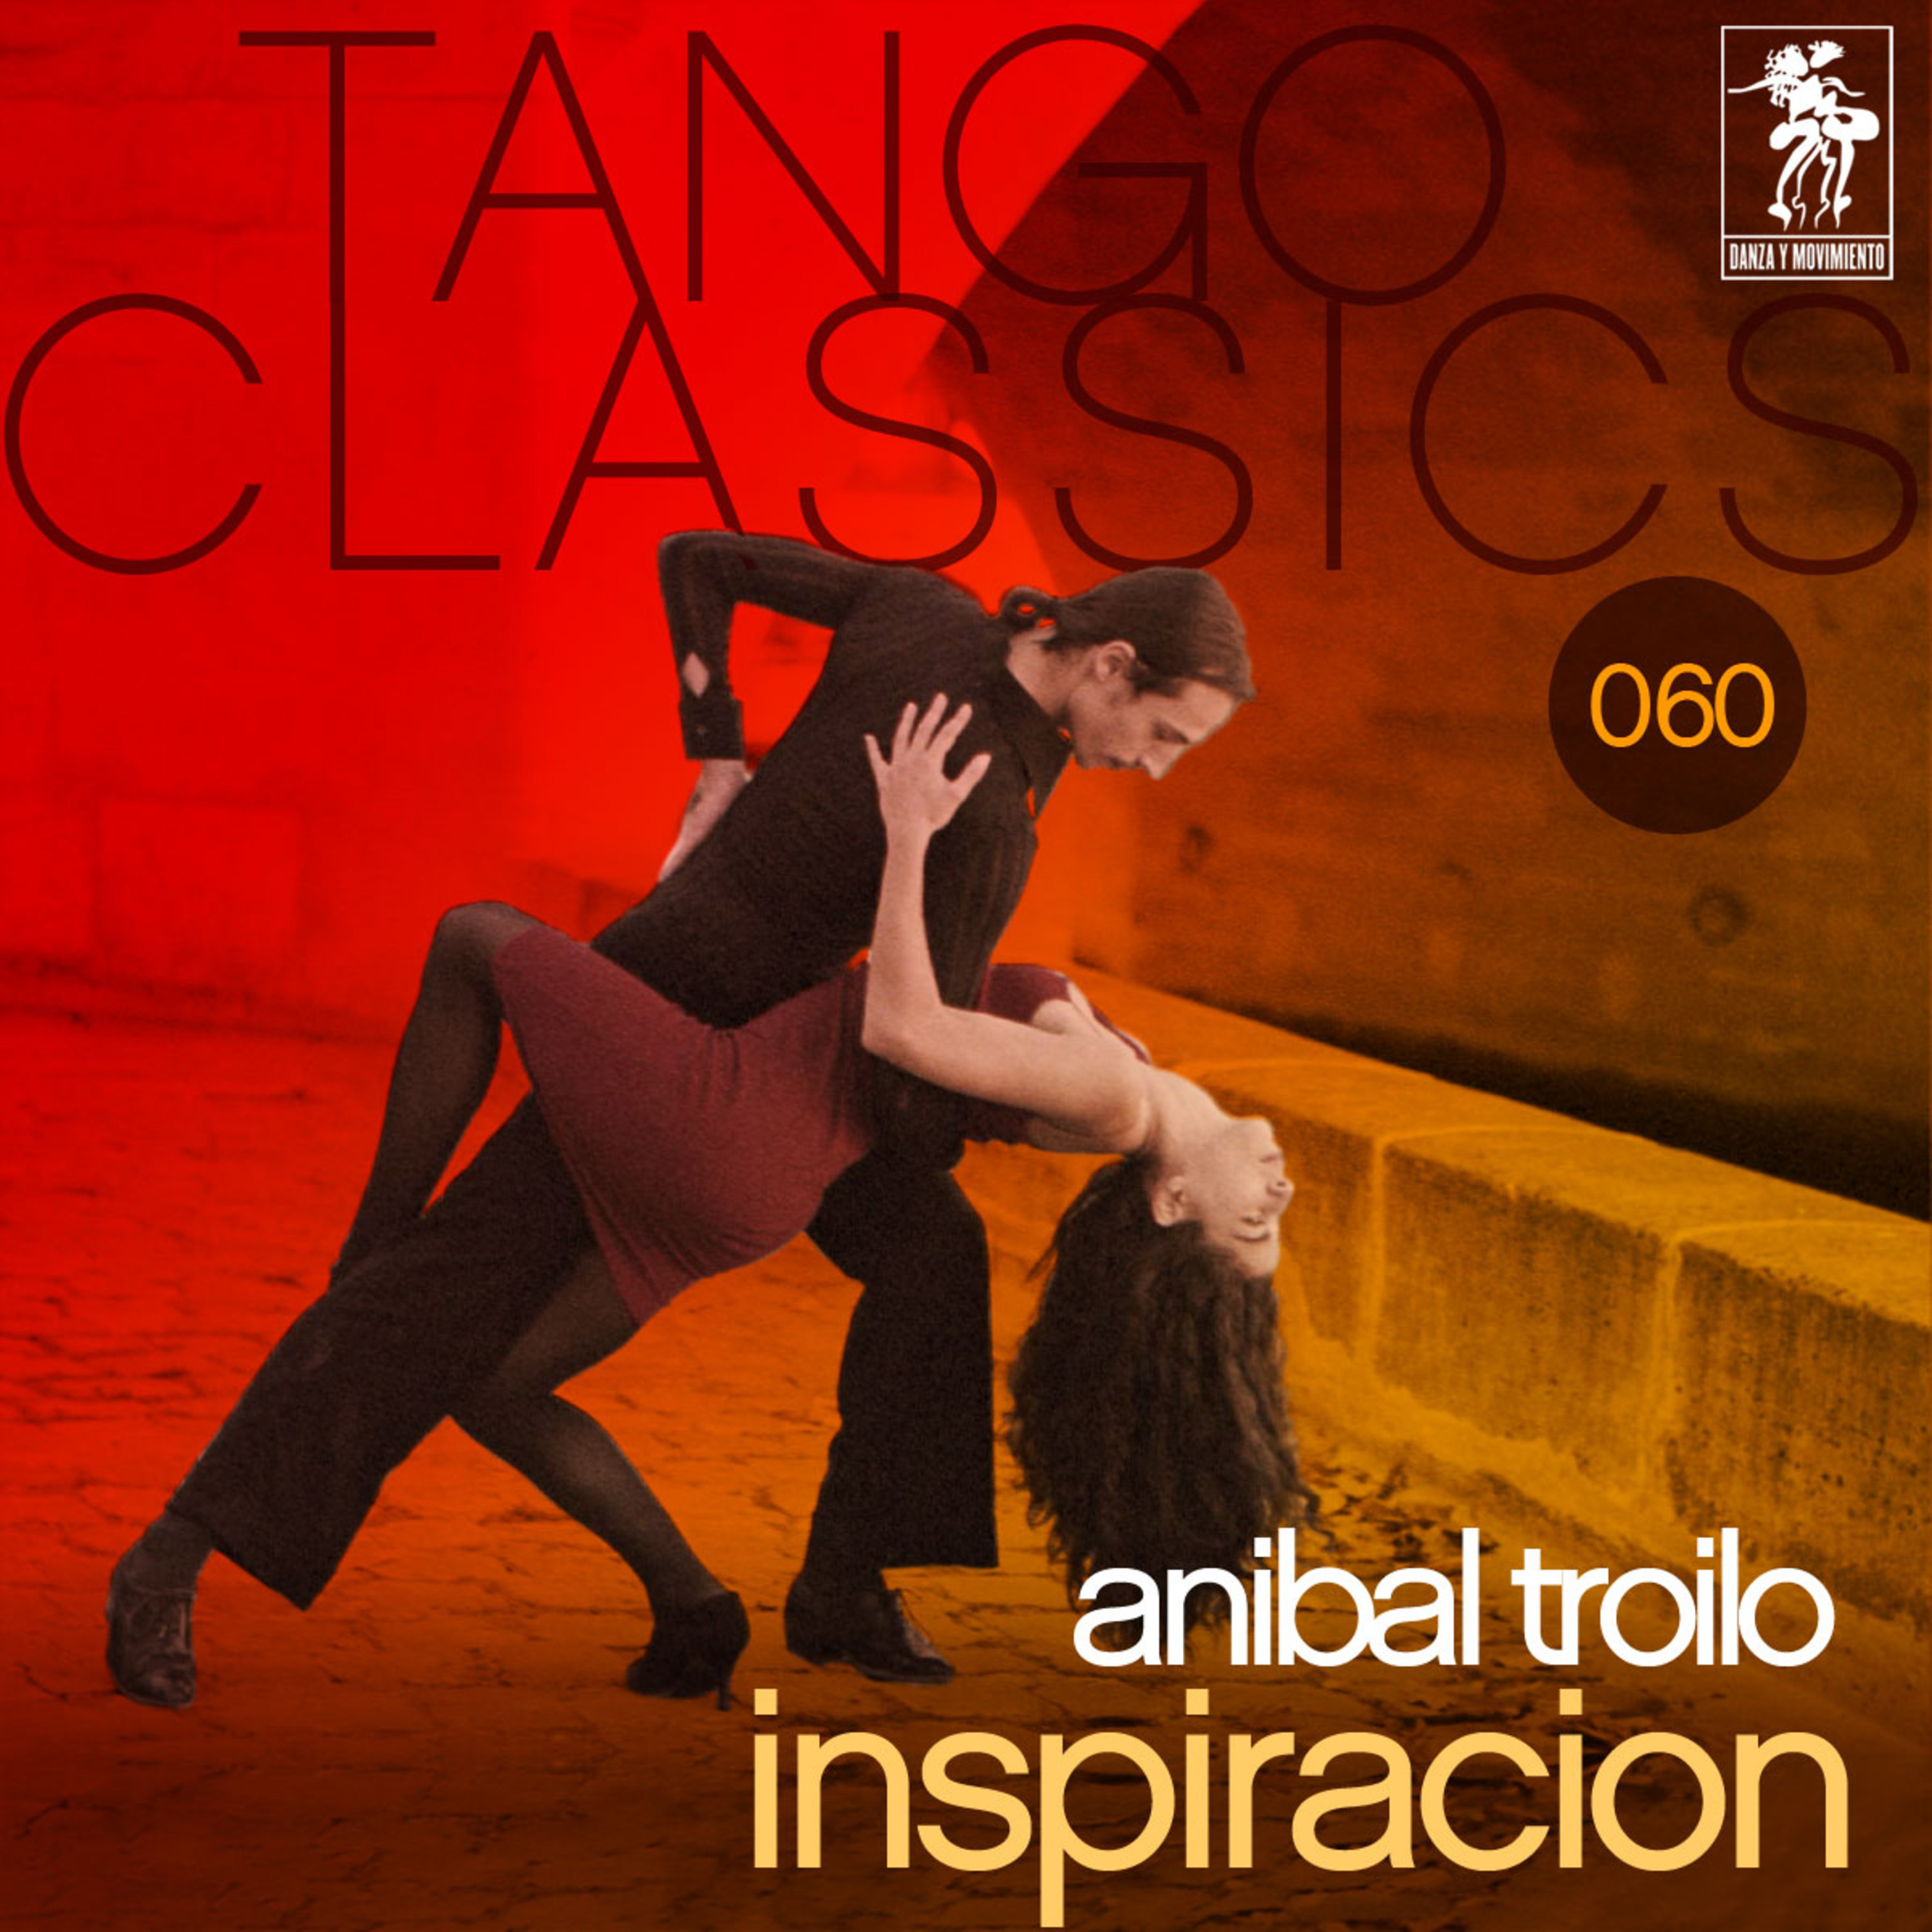 Tango Classics 060: Inspiracion